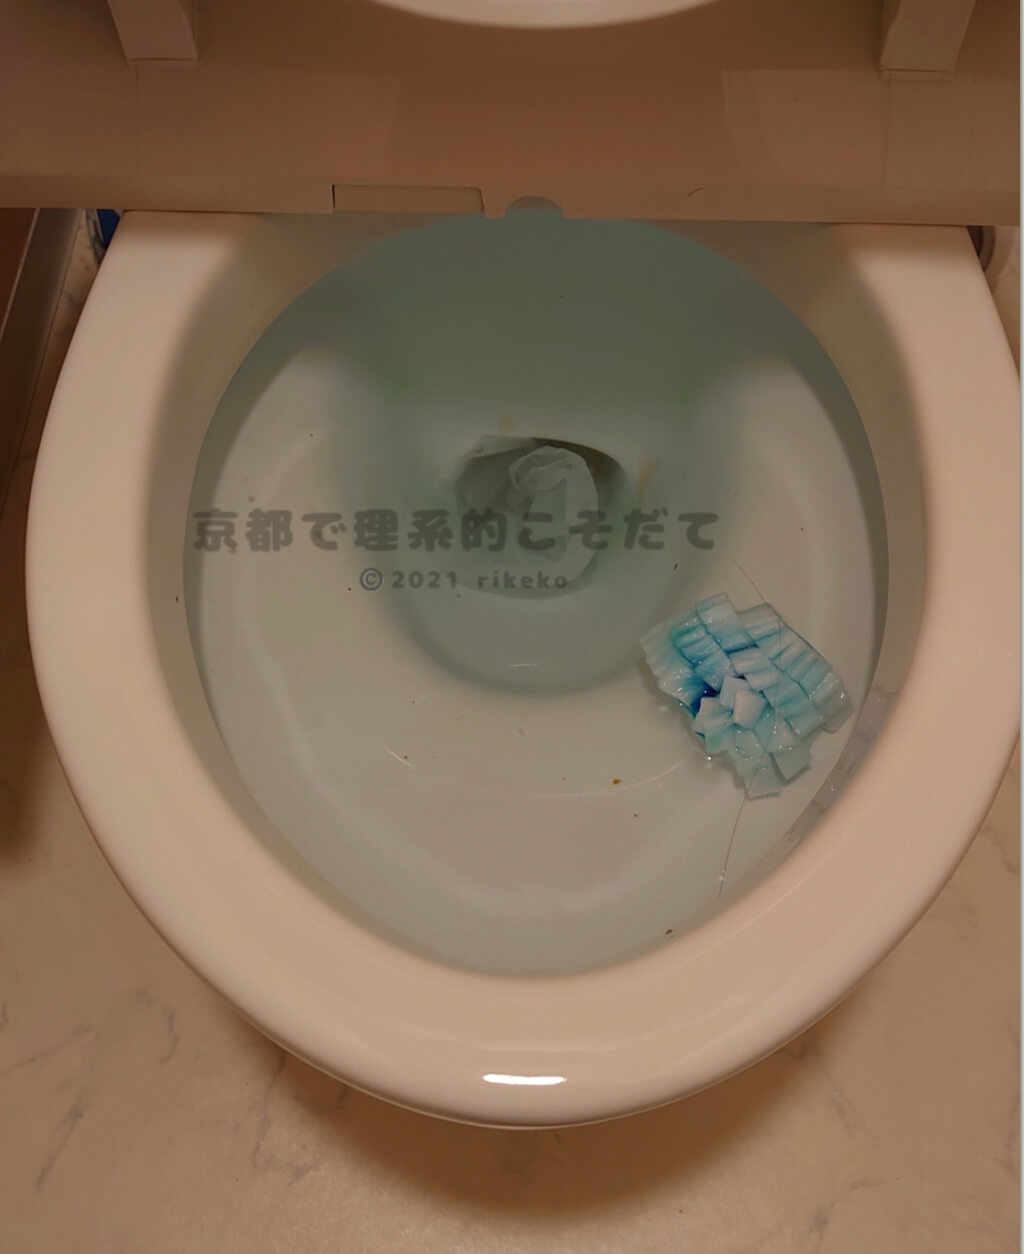 【体験談】流せるお掃除シートを流したらトイレが詰まった！詰まった場合の対処法は？【知らないと大変】 京都で理系的こそだて